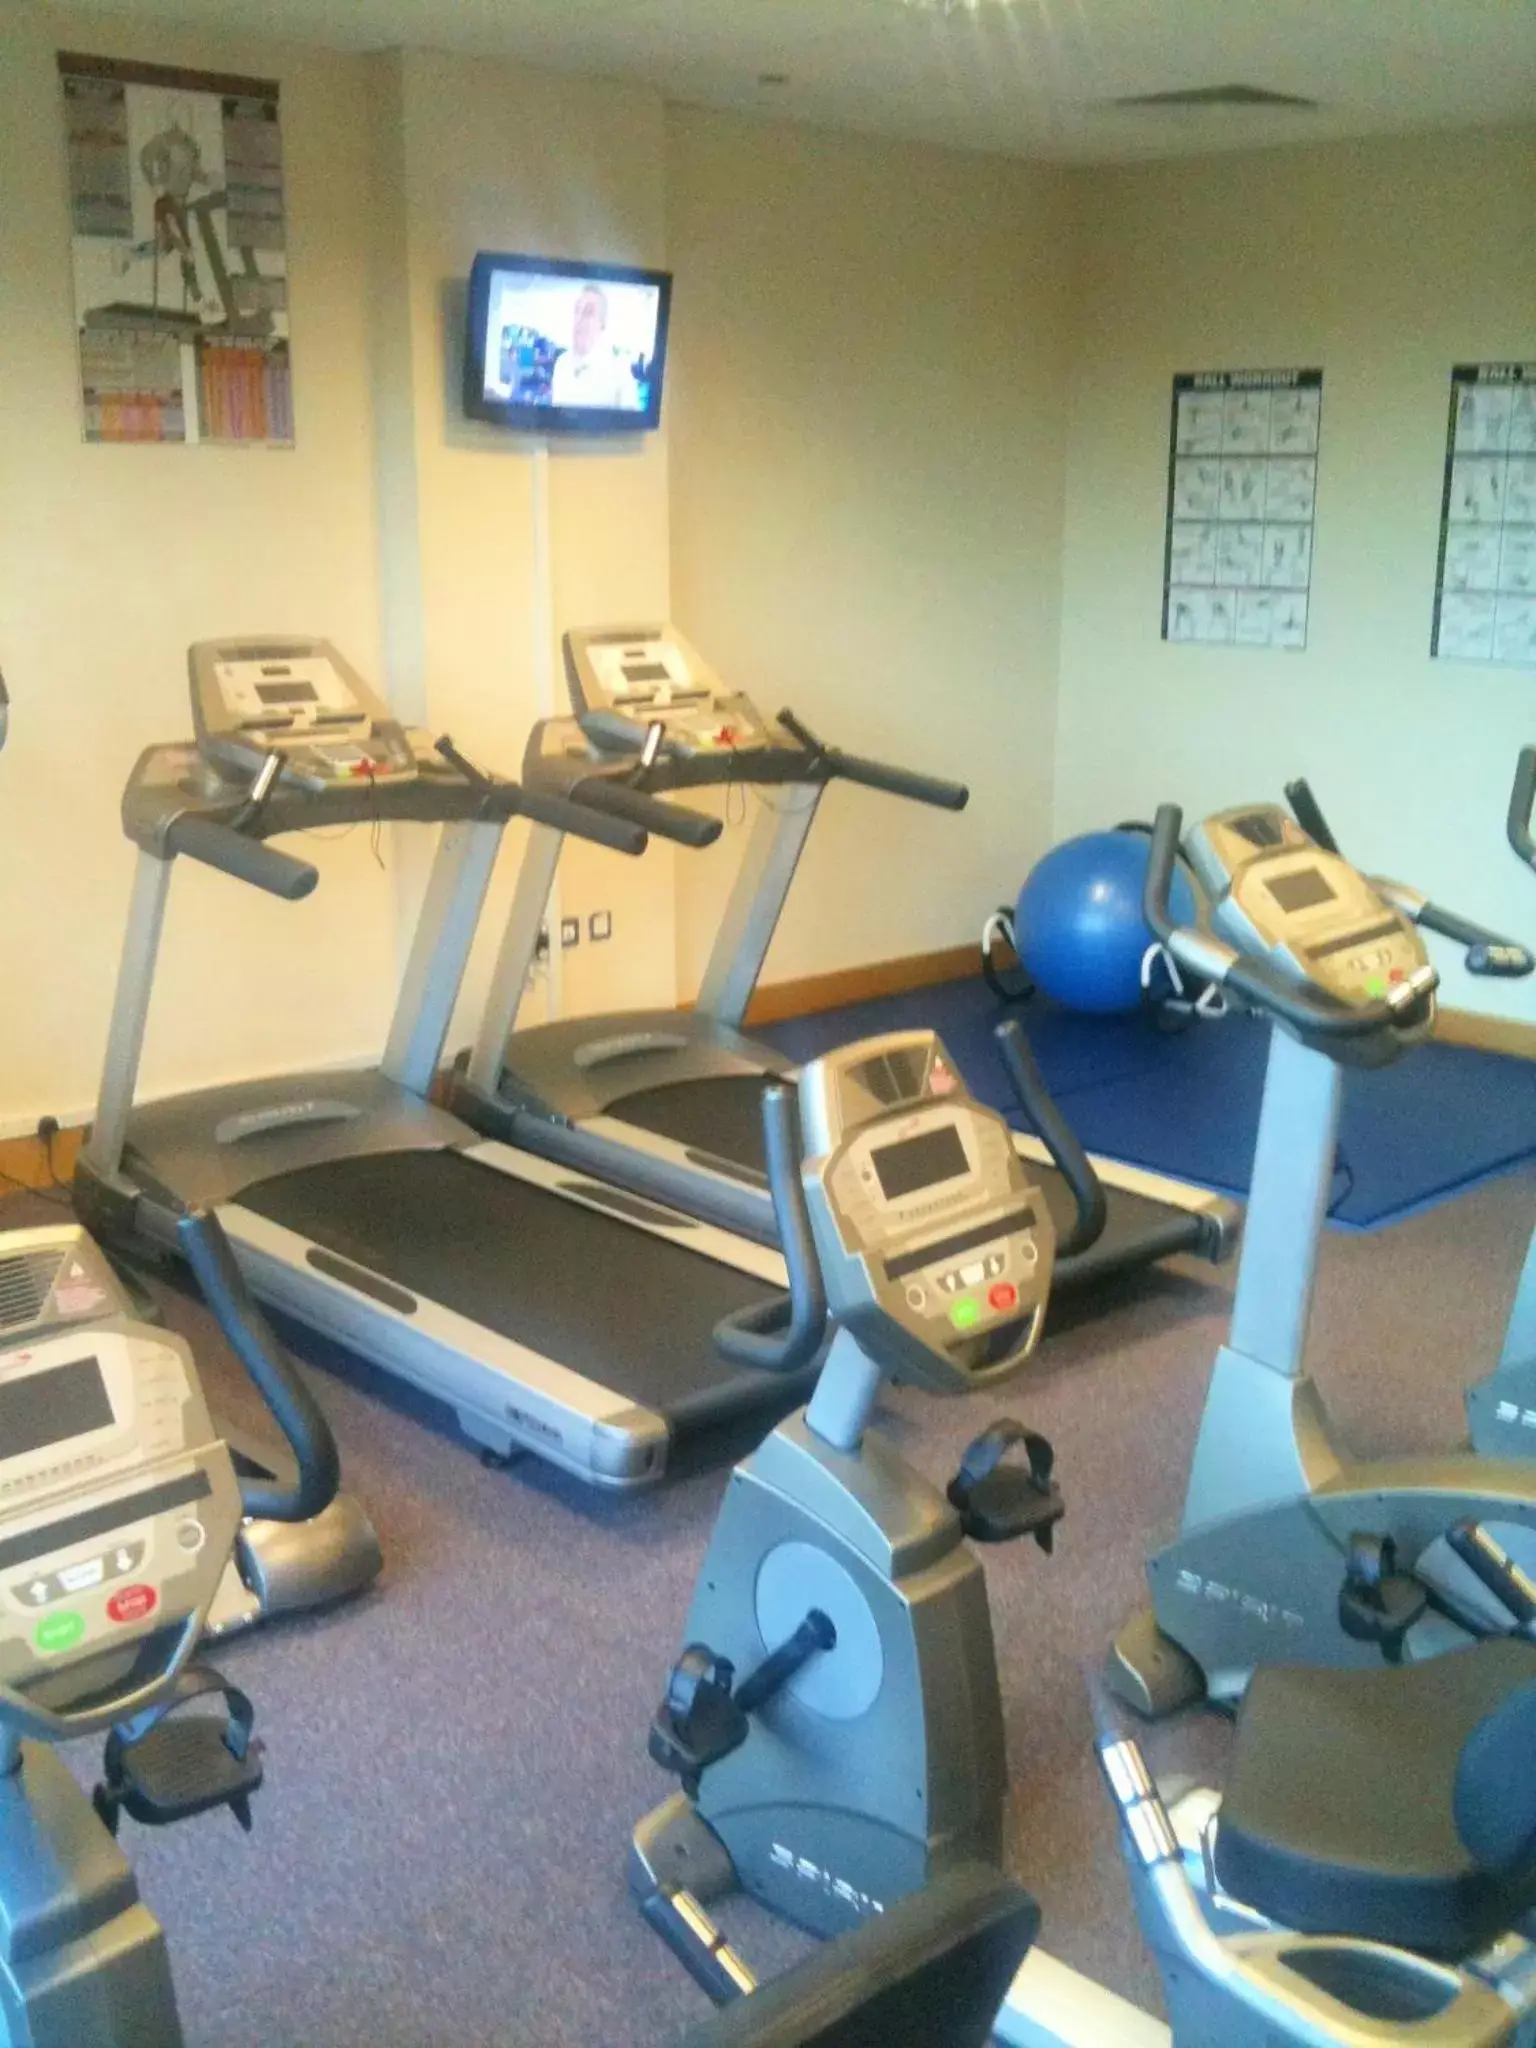 Fitness centre/facilities, Fitness Center/Facilities in Leonardo Hotel Derby - Formerly Jurys Inn